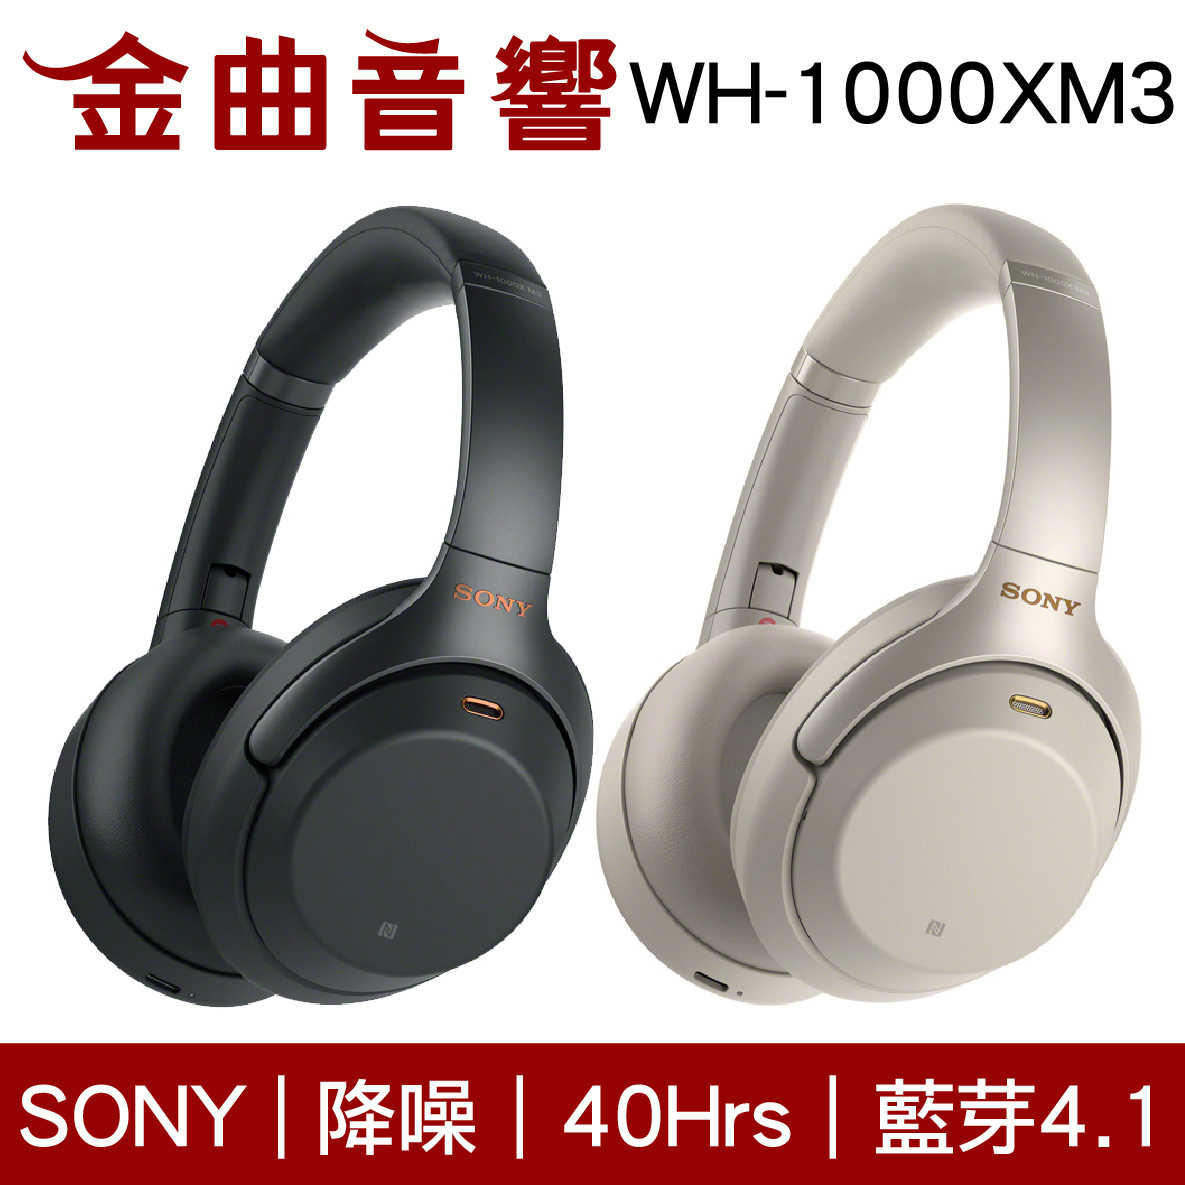 SONY WH-1000XM3 兩色可選 藍牙降噪耳罩式耳機 輕巧無線 | 金曲音響